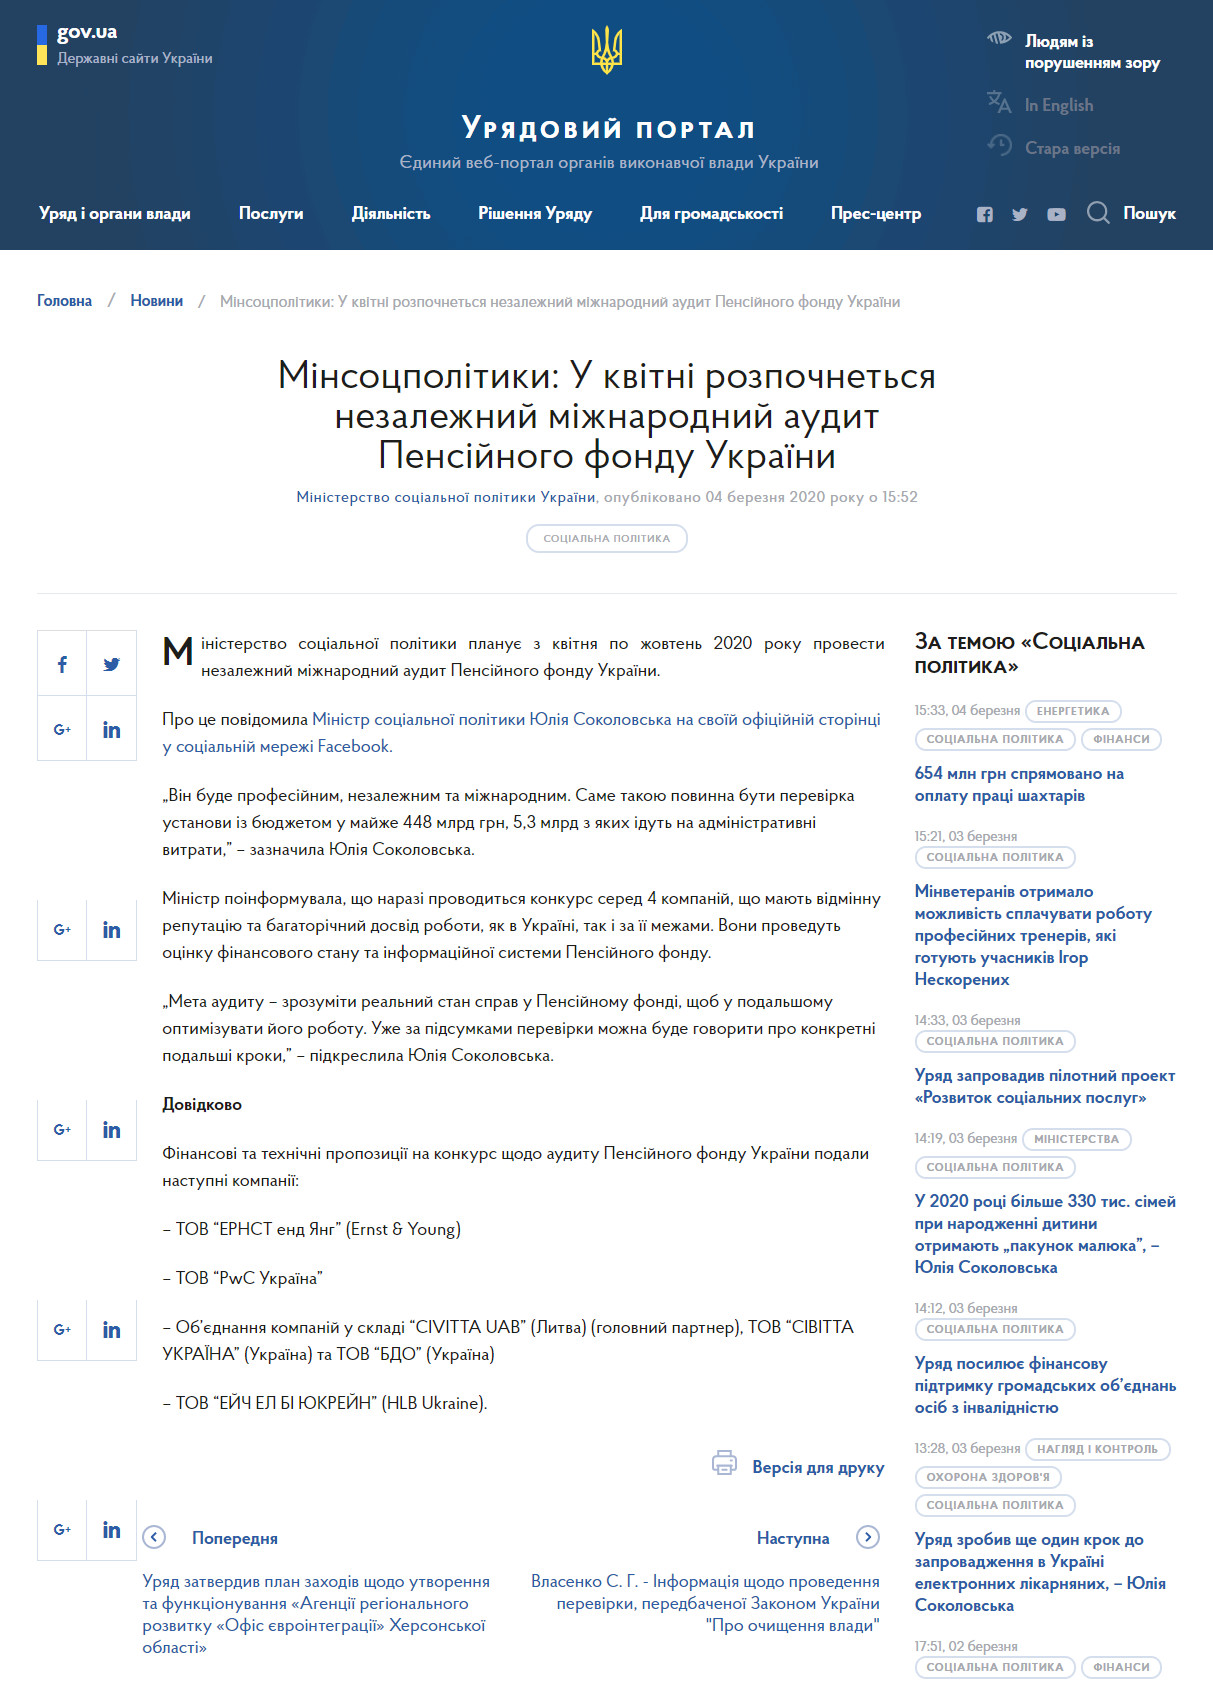 https://www.kmu.gov.ua/news/minsocpolitiki-u-kvitni-rozpochnetsya-nezalezhnij-mizhnarodnij-audit-pensijnogo-fondu-ukrayini